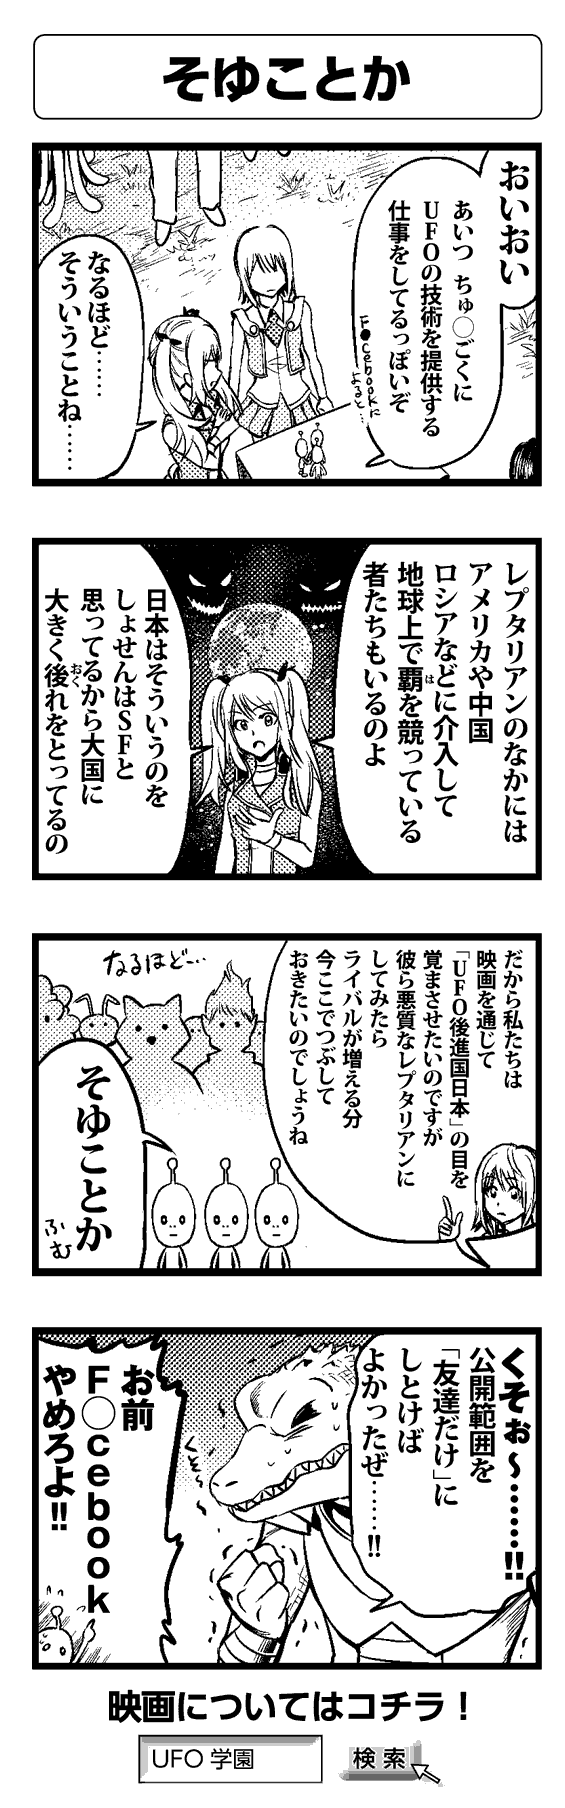 そゆことか - 四コマ漫画ノンフィクション #020